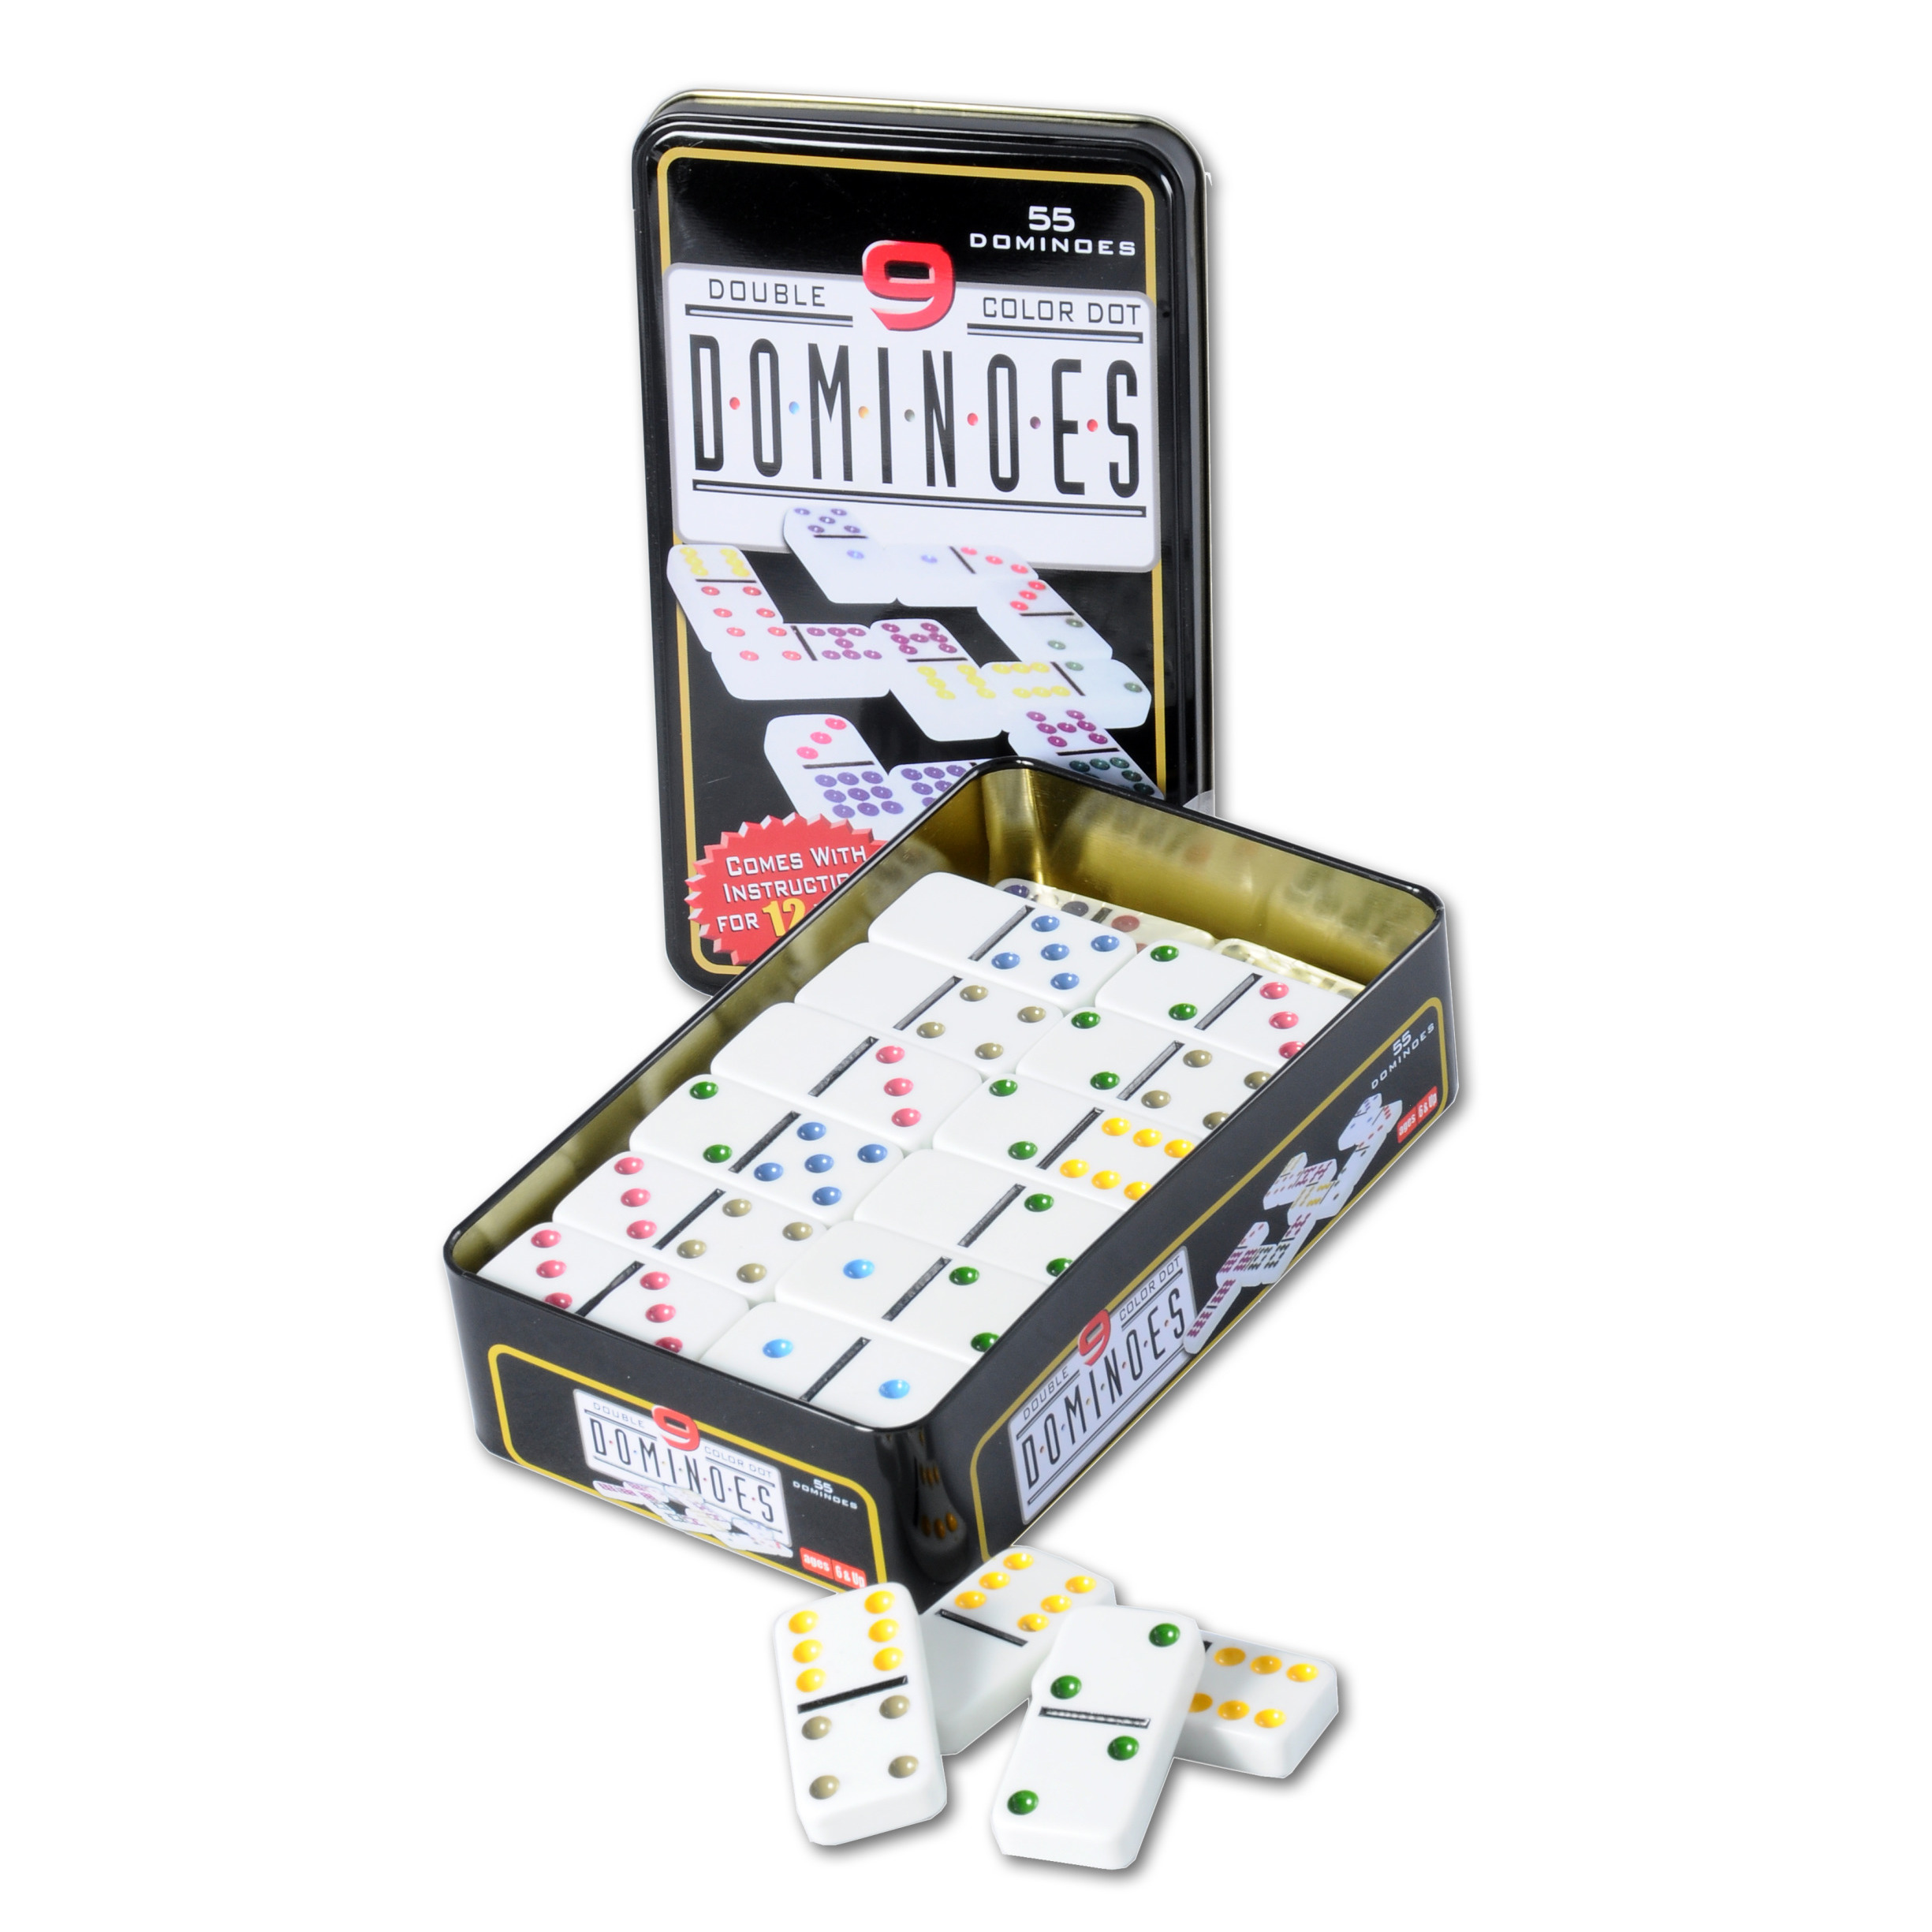 Domino spel dubbel-double 9 in blik en 55x gekleurde stenen